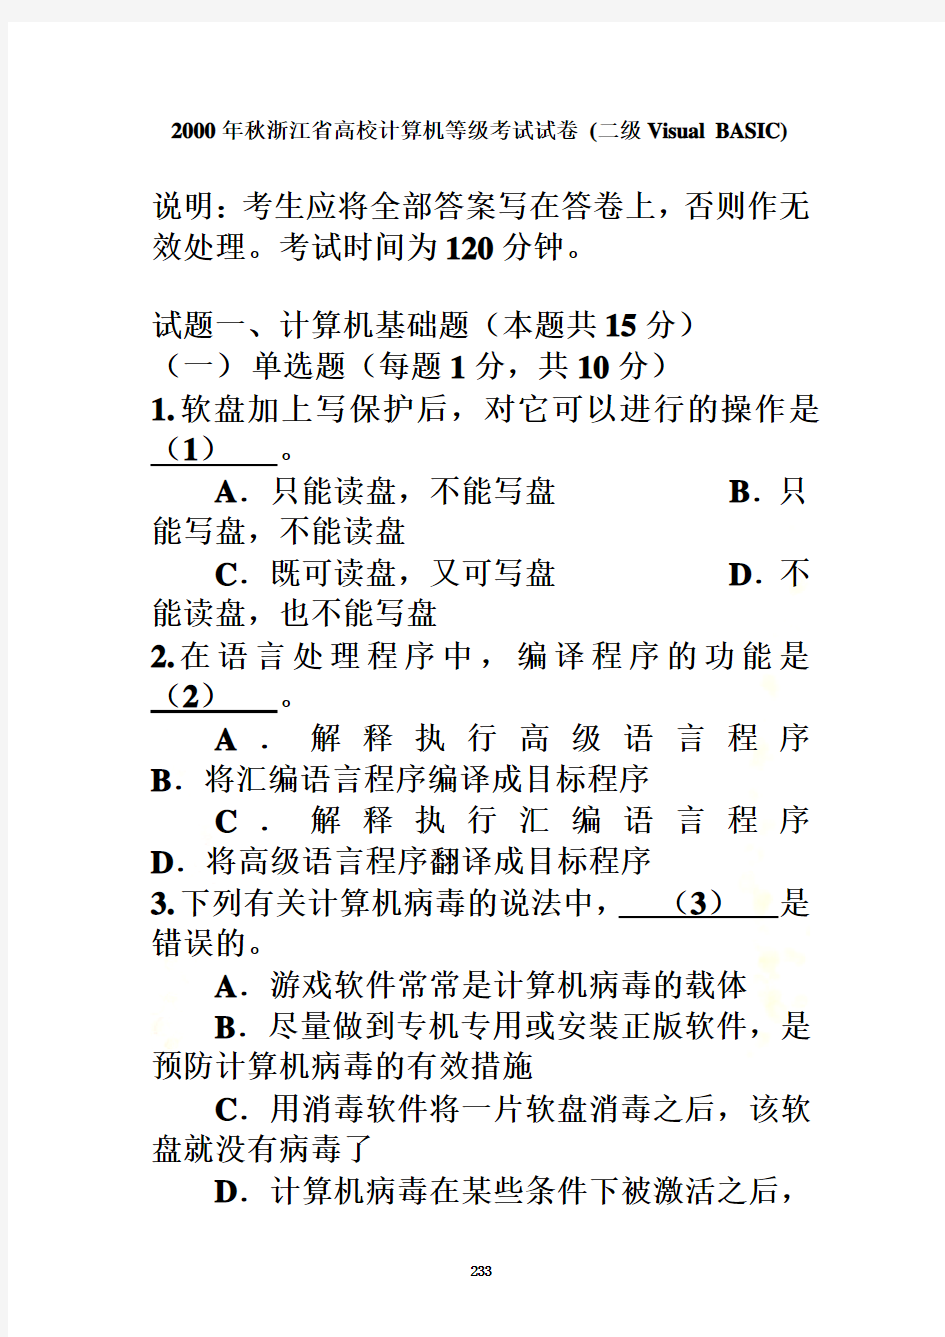 2000年秋浙江省高校计算机等级考试试卷-(二级Visual-BASIC)